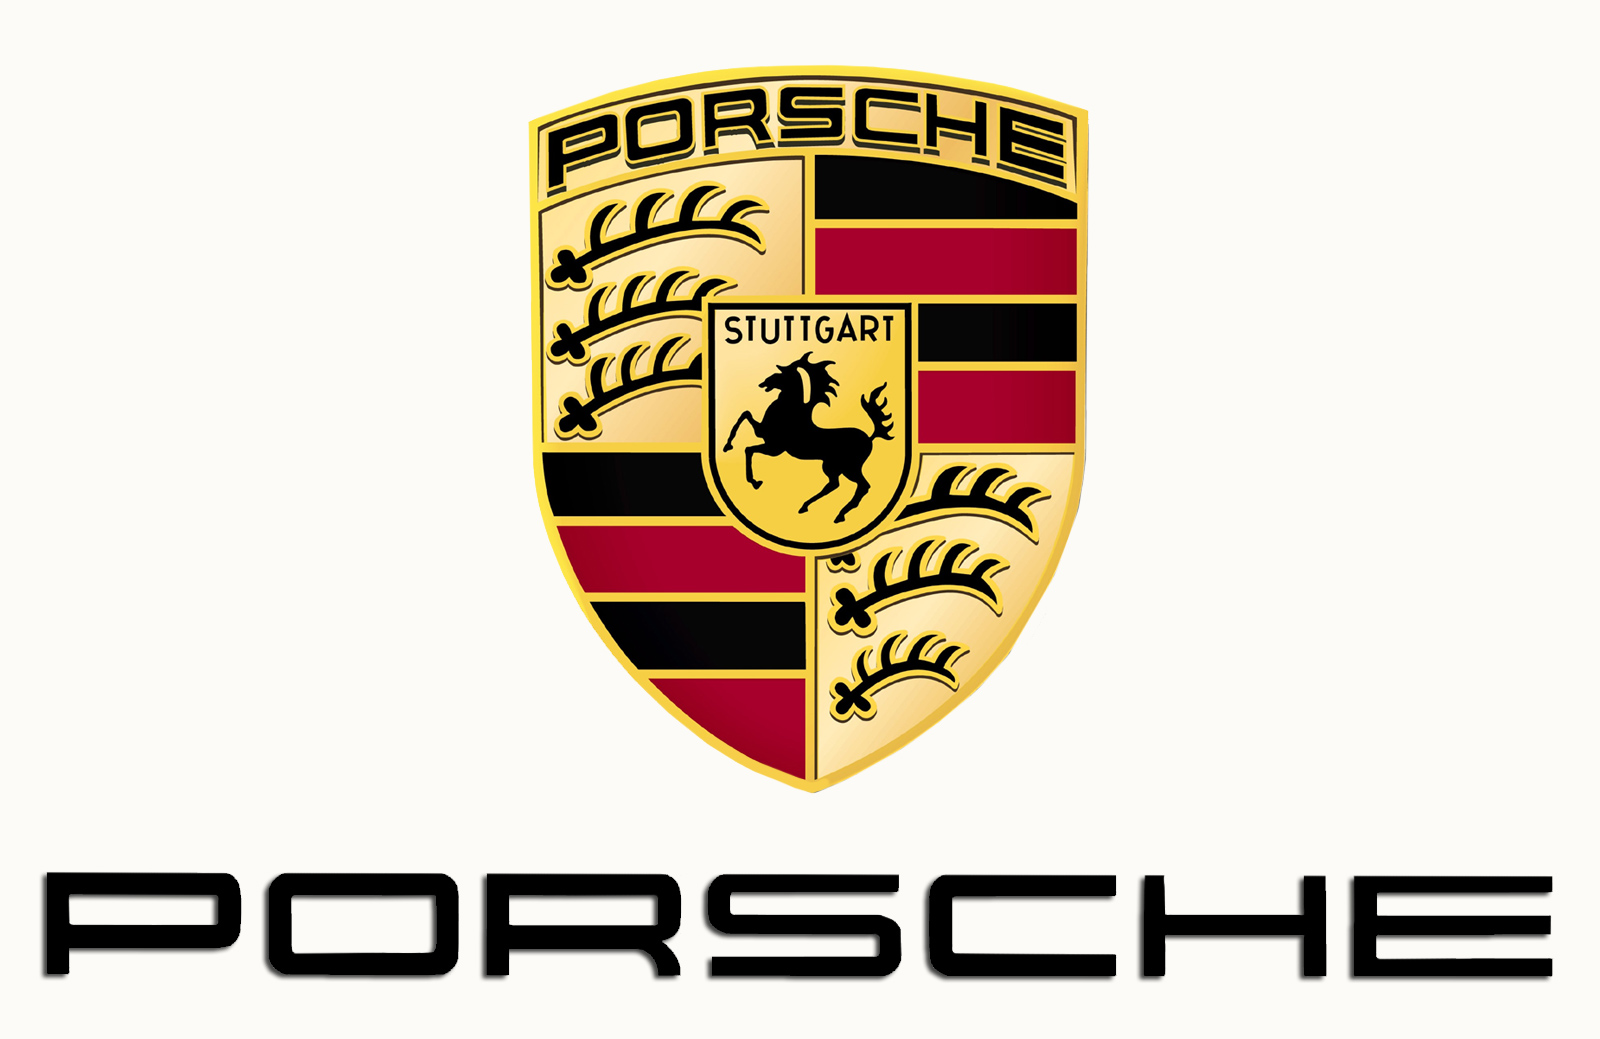 Porsche Brand Logo Car Symbol With Name Royalty Free Vector - Bank2home.com